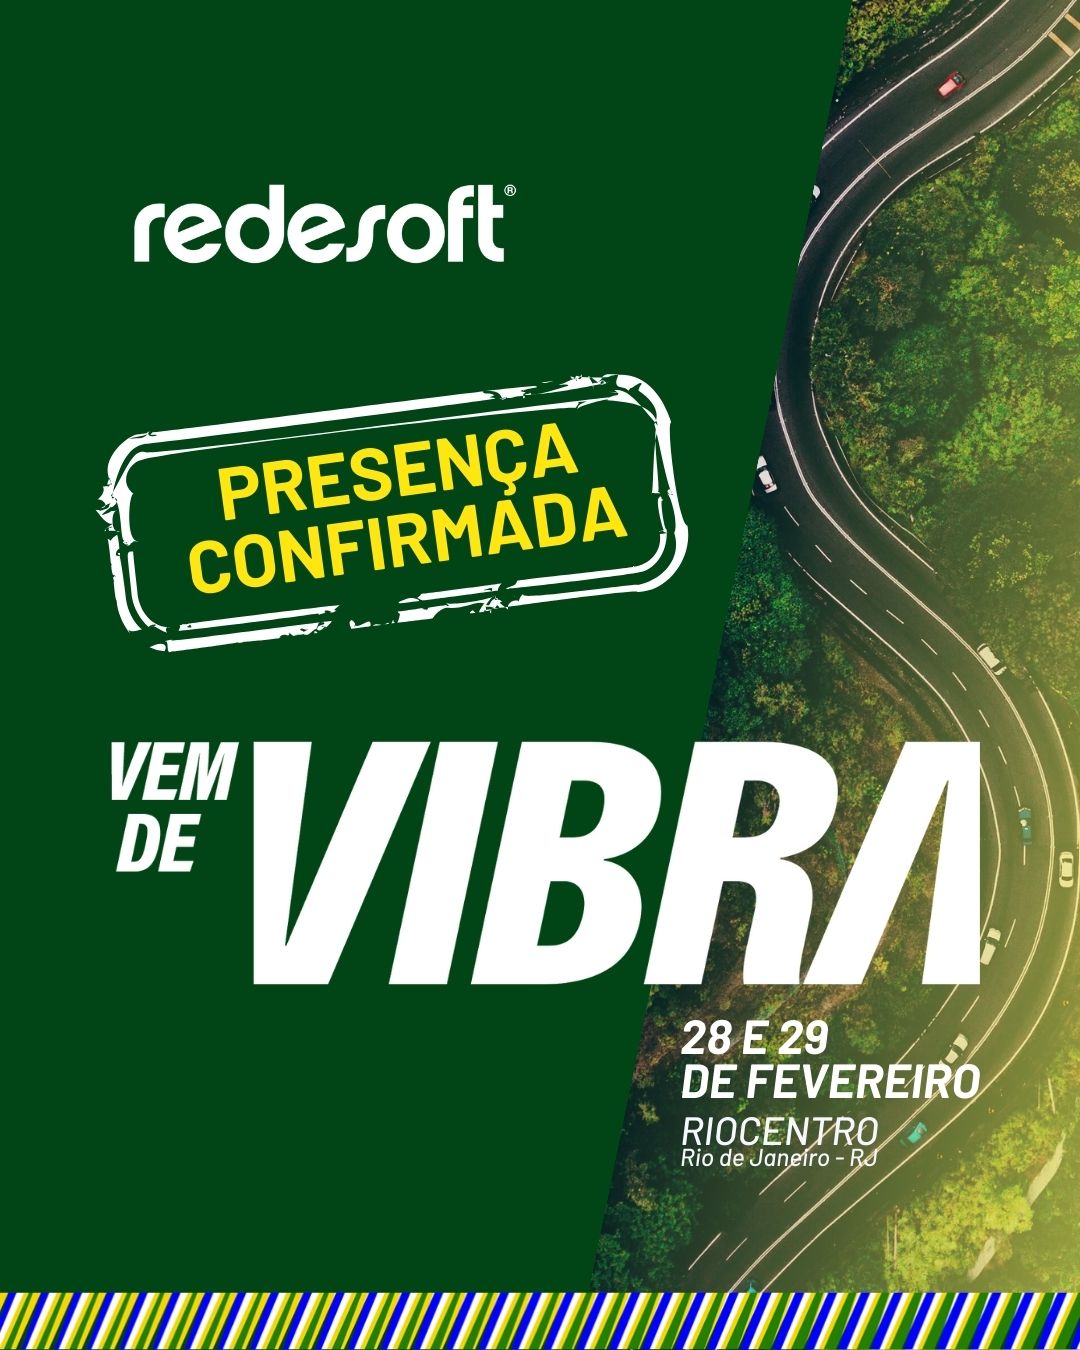 Vem de Vibra, a Redesoft é presença confirmada!